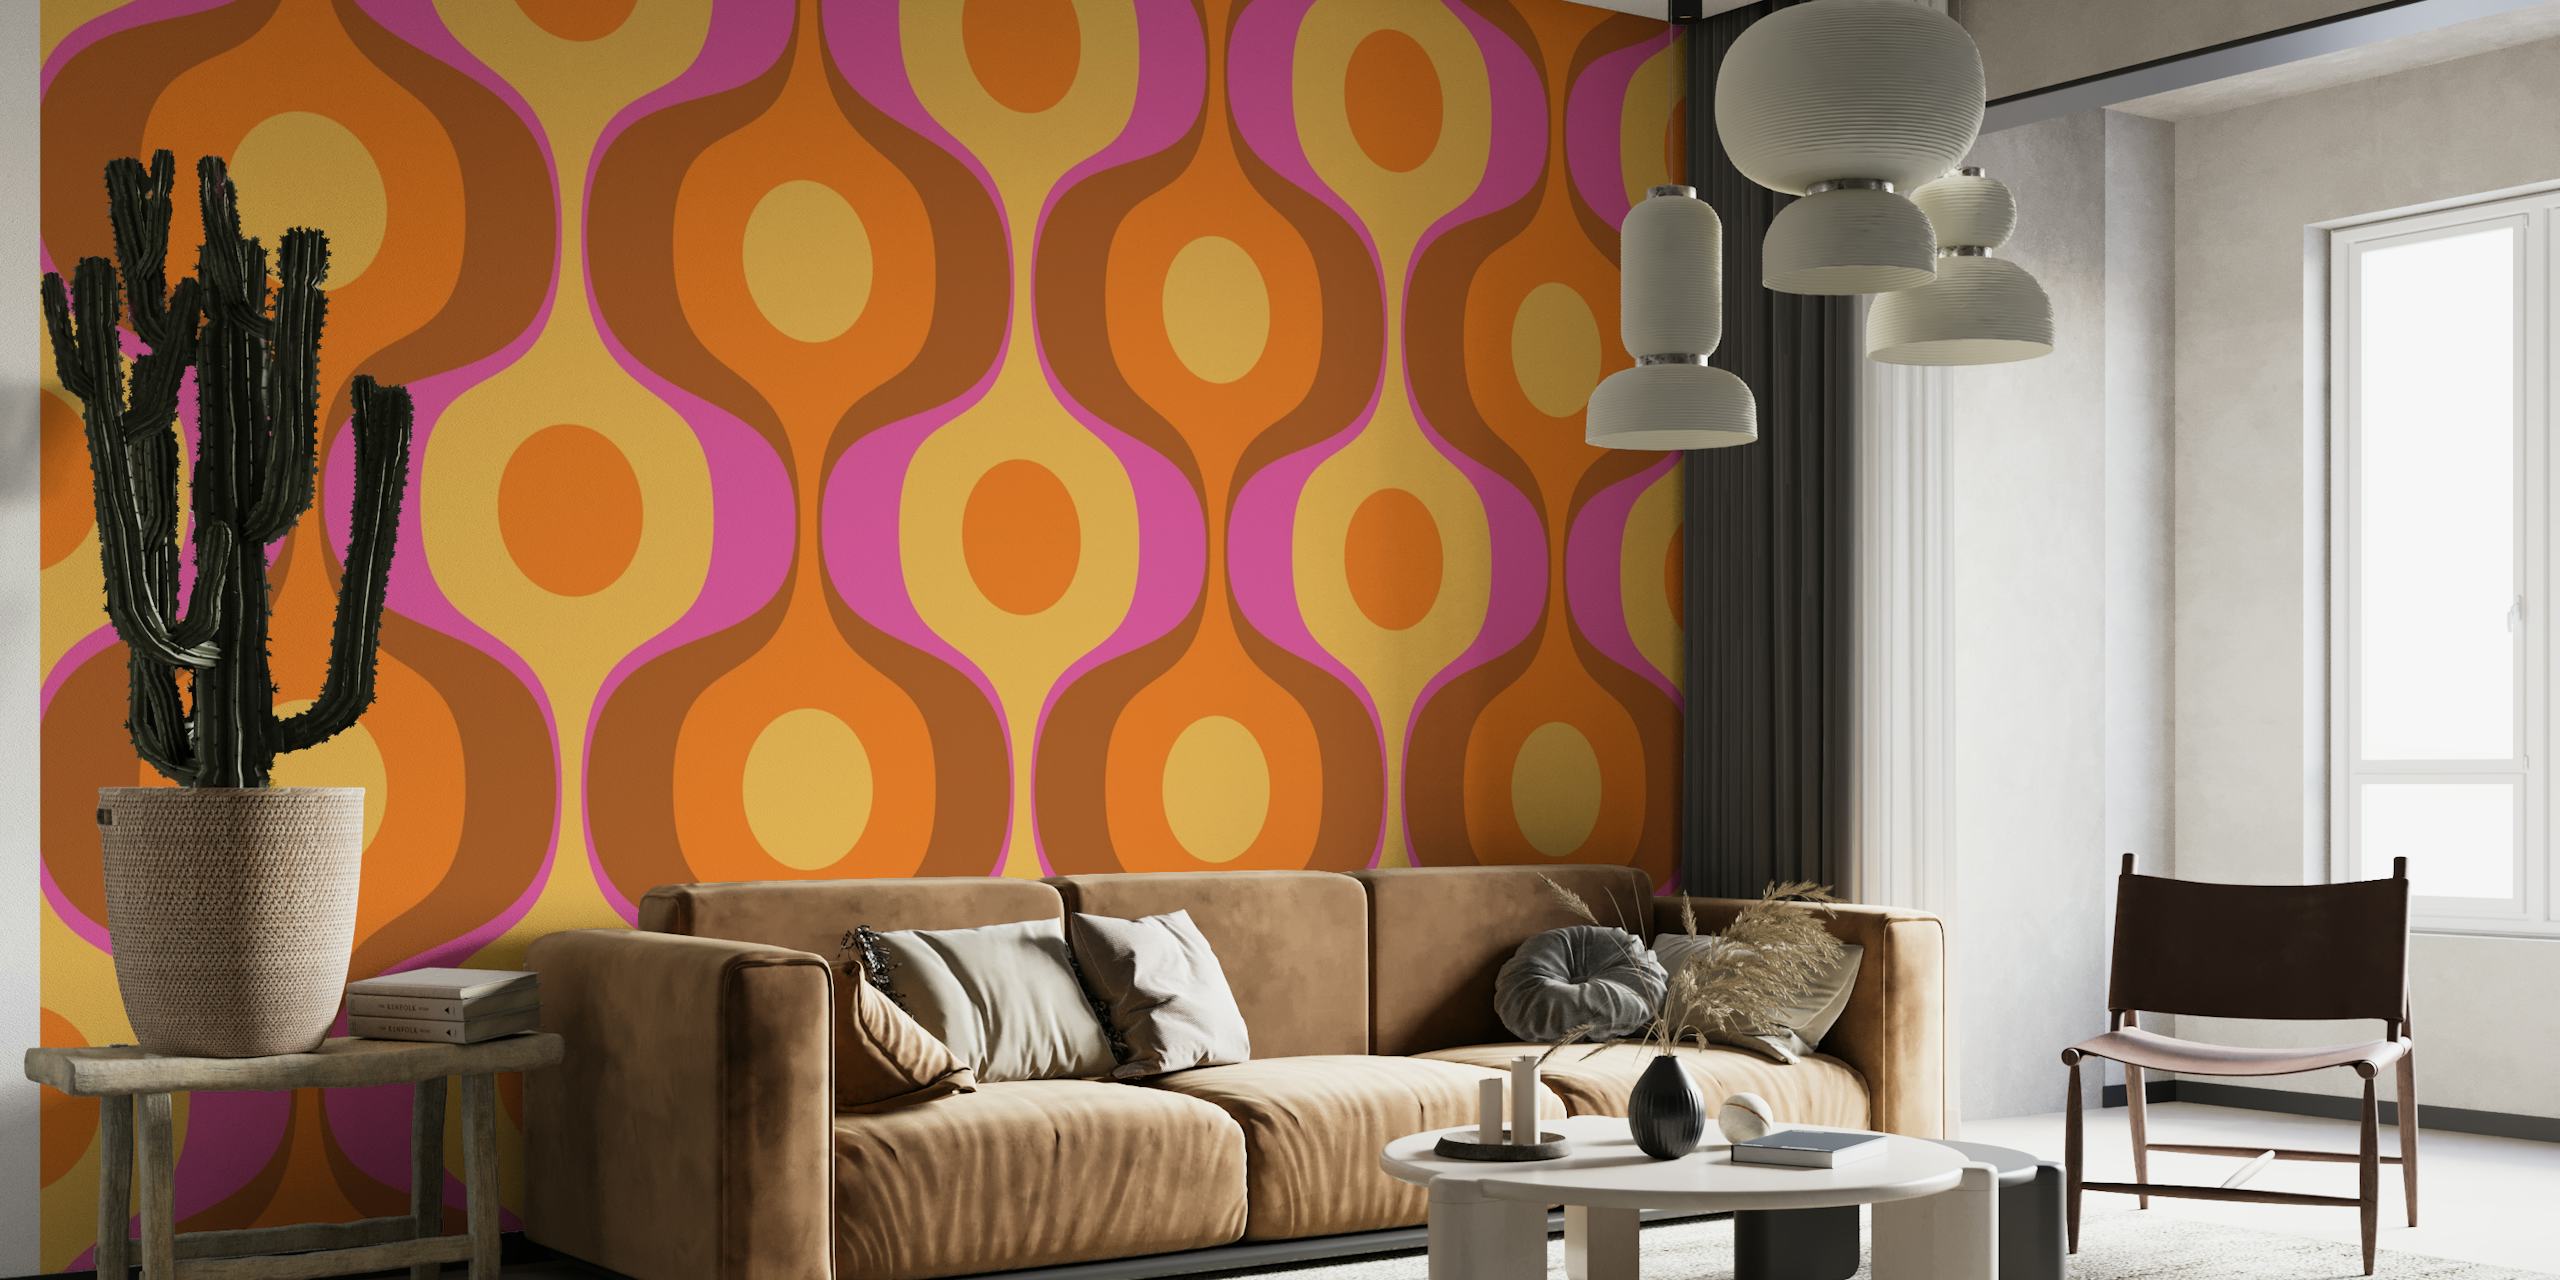 Mural de parede vívido de inspiração retrô com ondas geométricas abstratas em terracota, mostarda e lilás